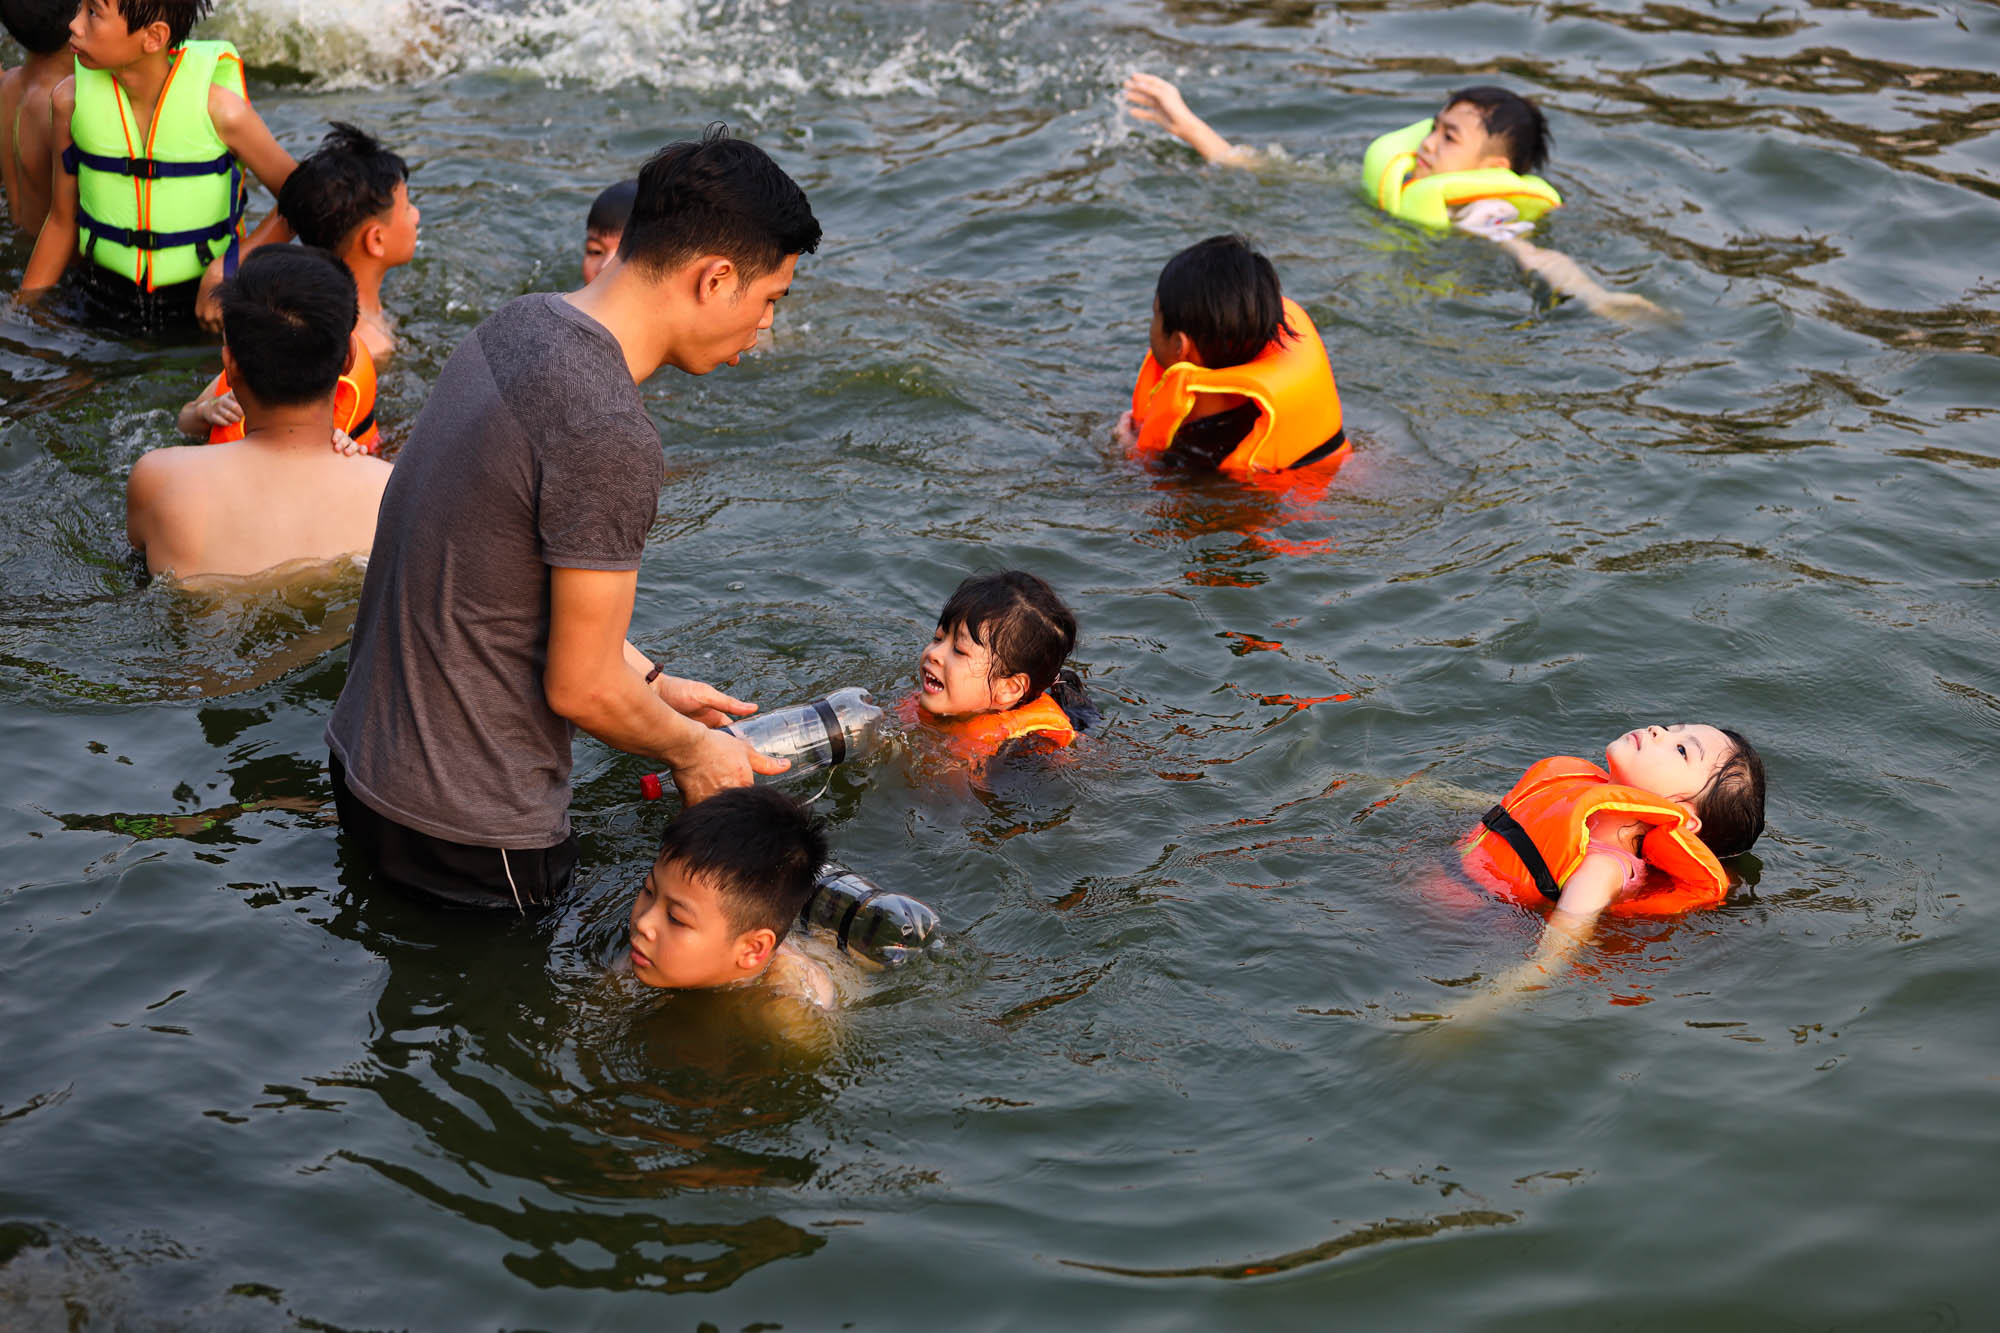 Ao làng thành 'bể bơi miễn phí', người Hà Nội đổ xô đi tắm giải nhiệt - Ảnh 5.